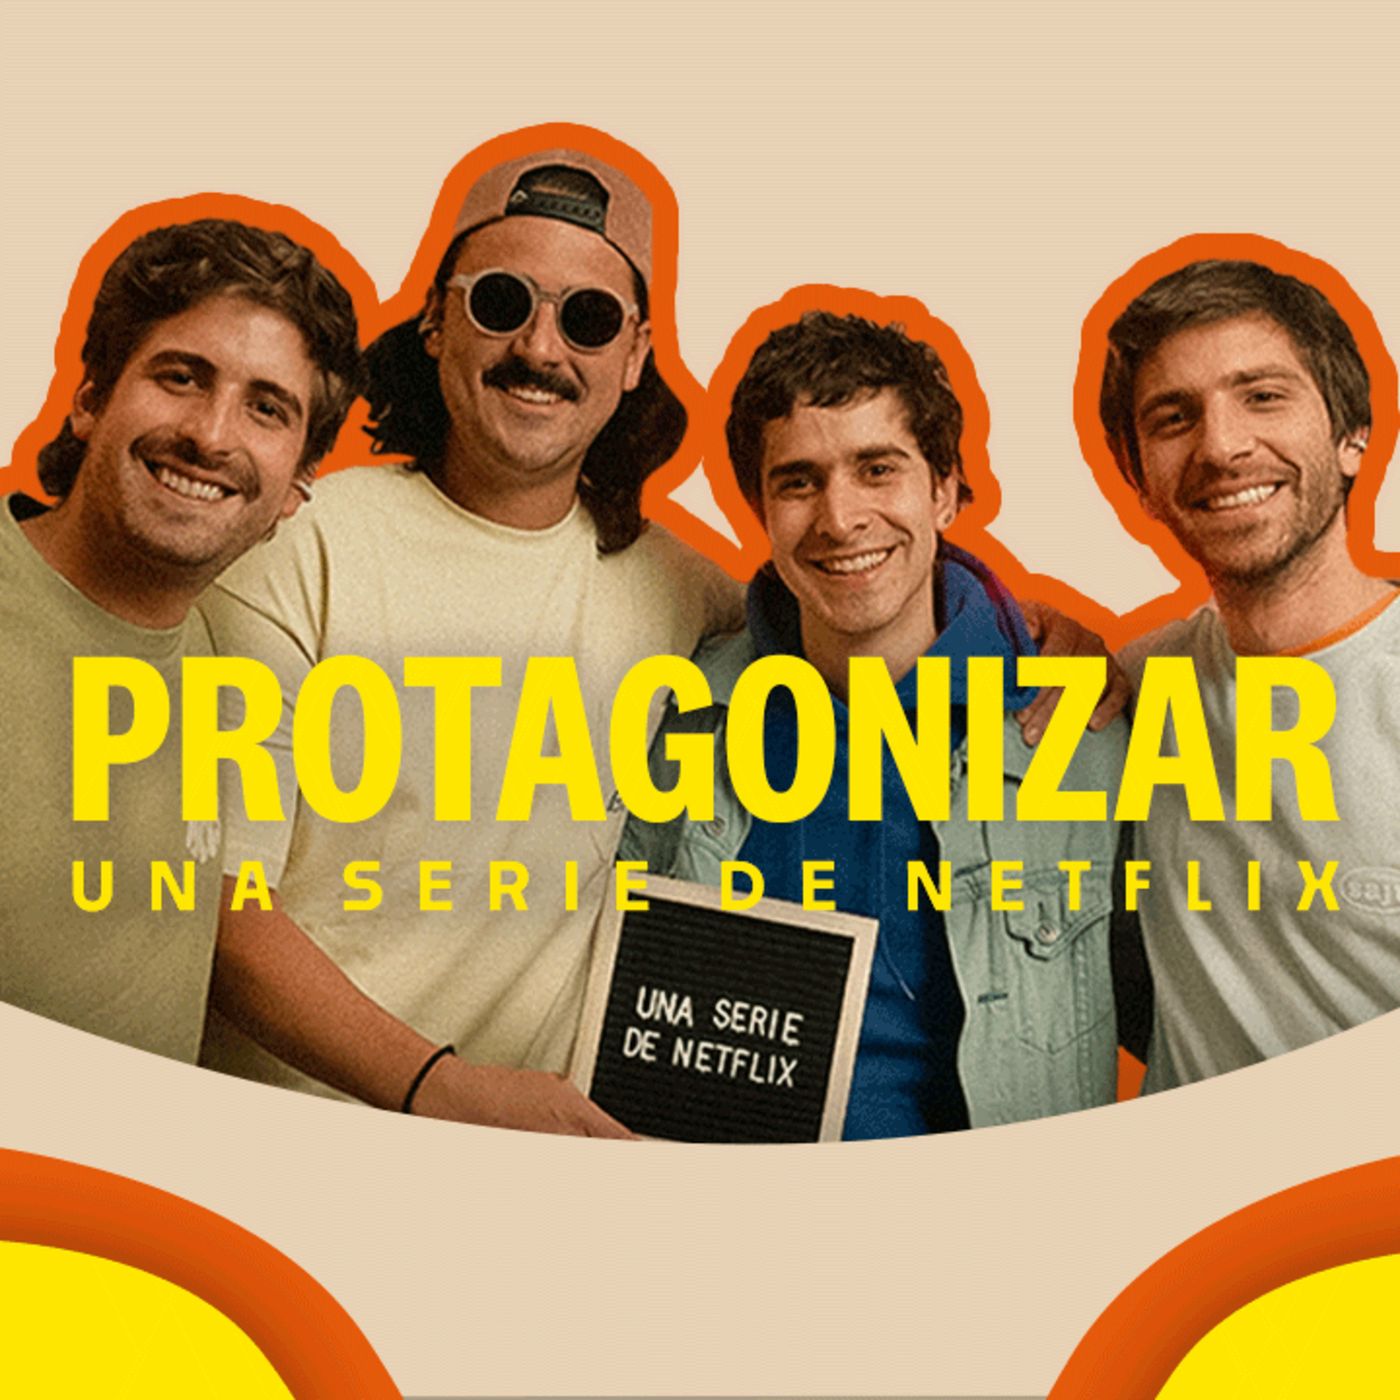 Protagonizar una serie de Netflix | Emmanuel Restrepo | Ep 4